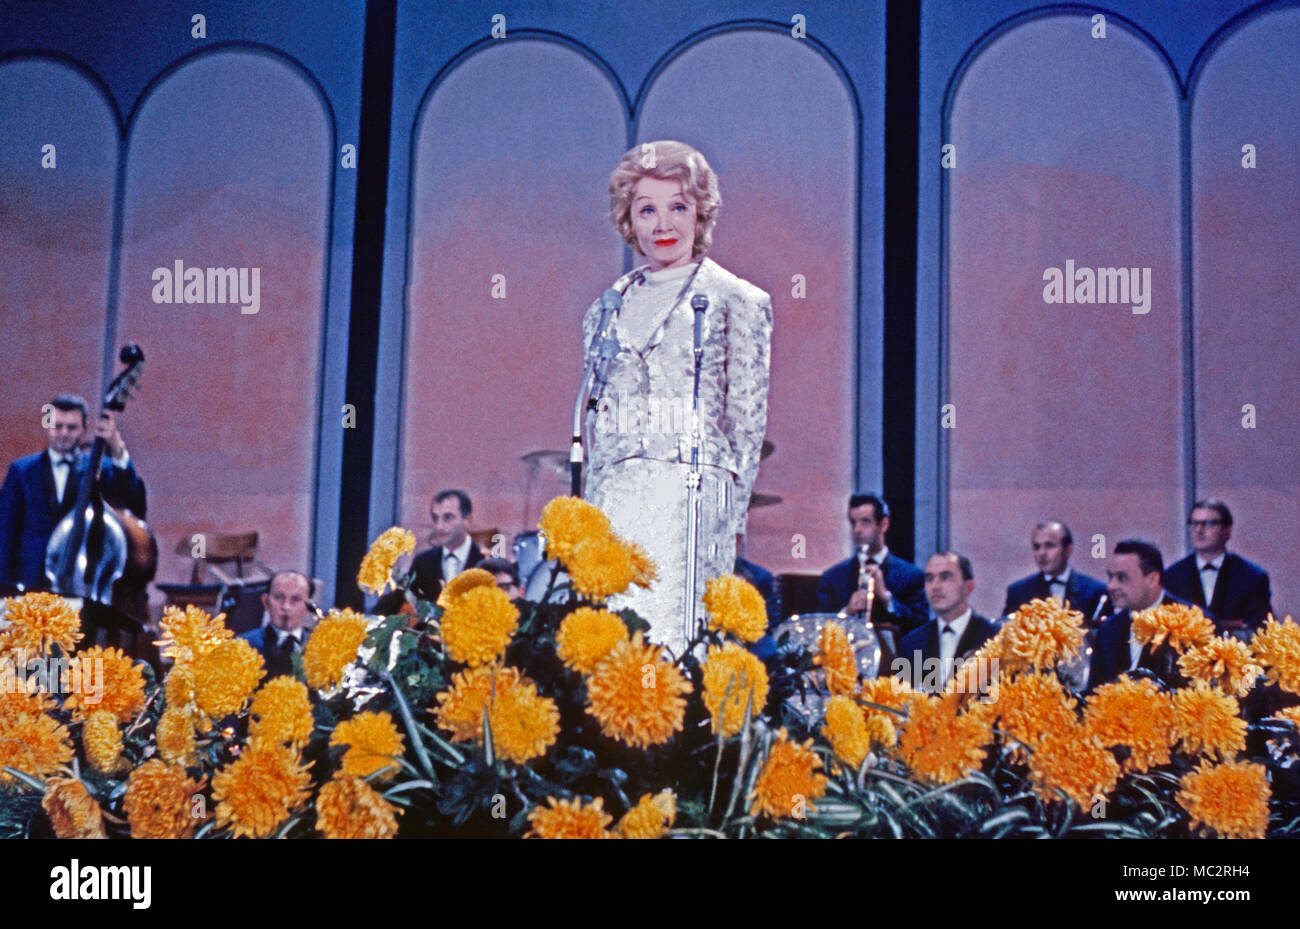 Marlene Dietrich, deutsch amerikanische Sängerin Schauspielerin und bei einem Konzert, 1969. Actrice et chanteuse allemande Marlene Dietrich en concert, 1969 Banque D'Images